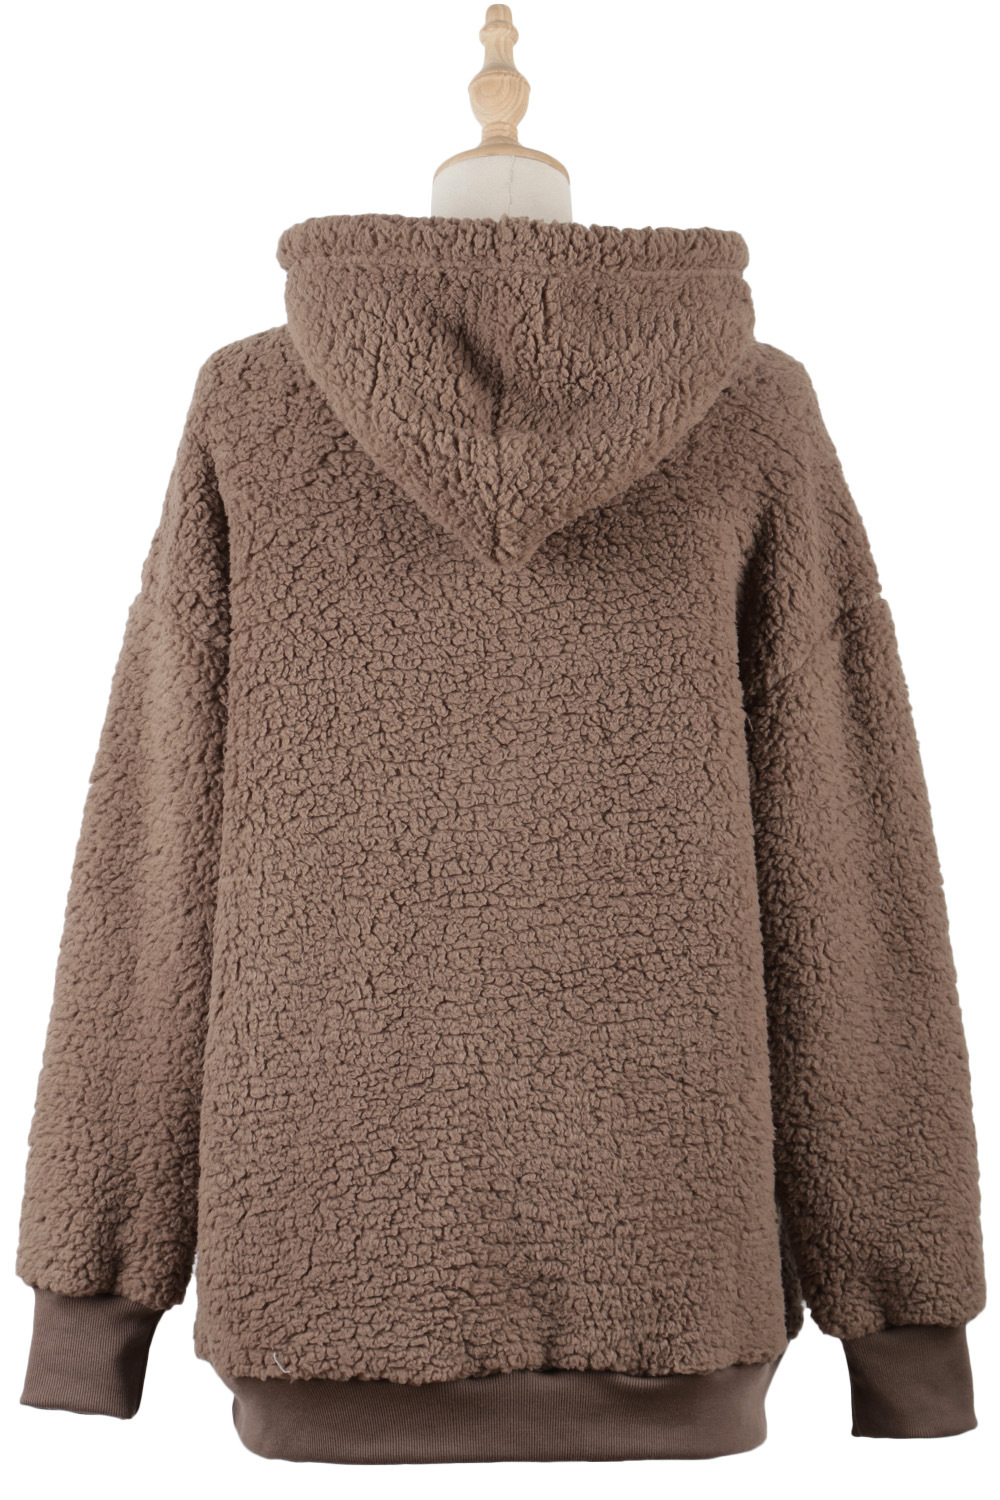 Plus velvet European style pocket elmo hoodie for women